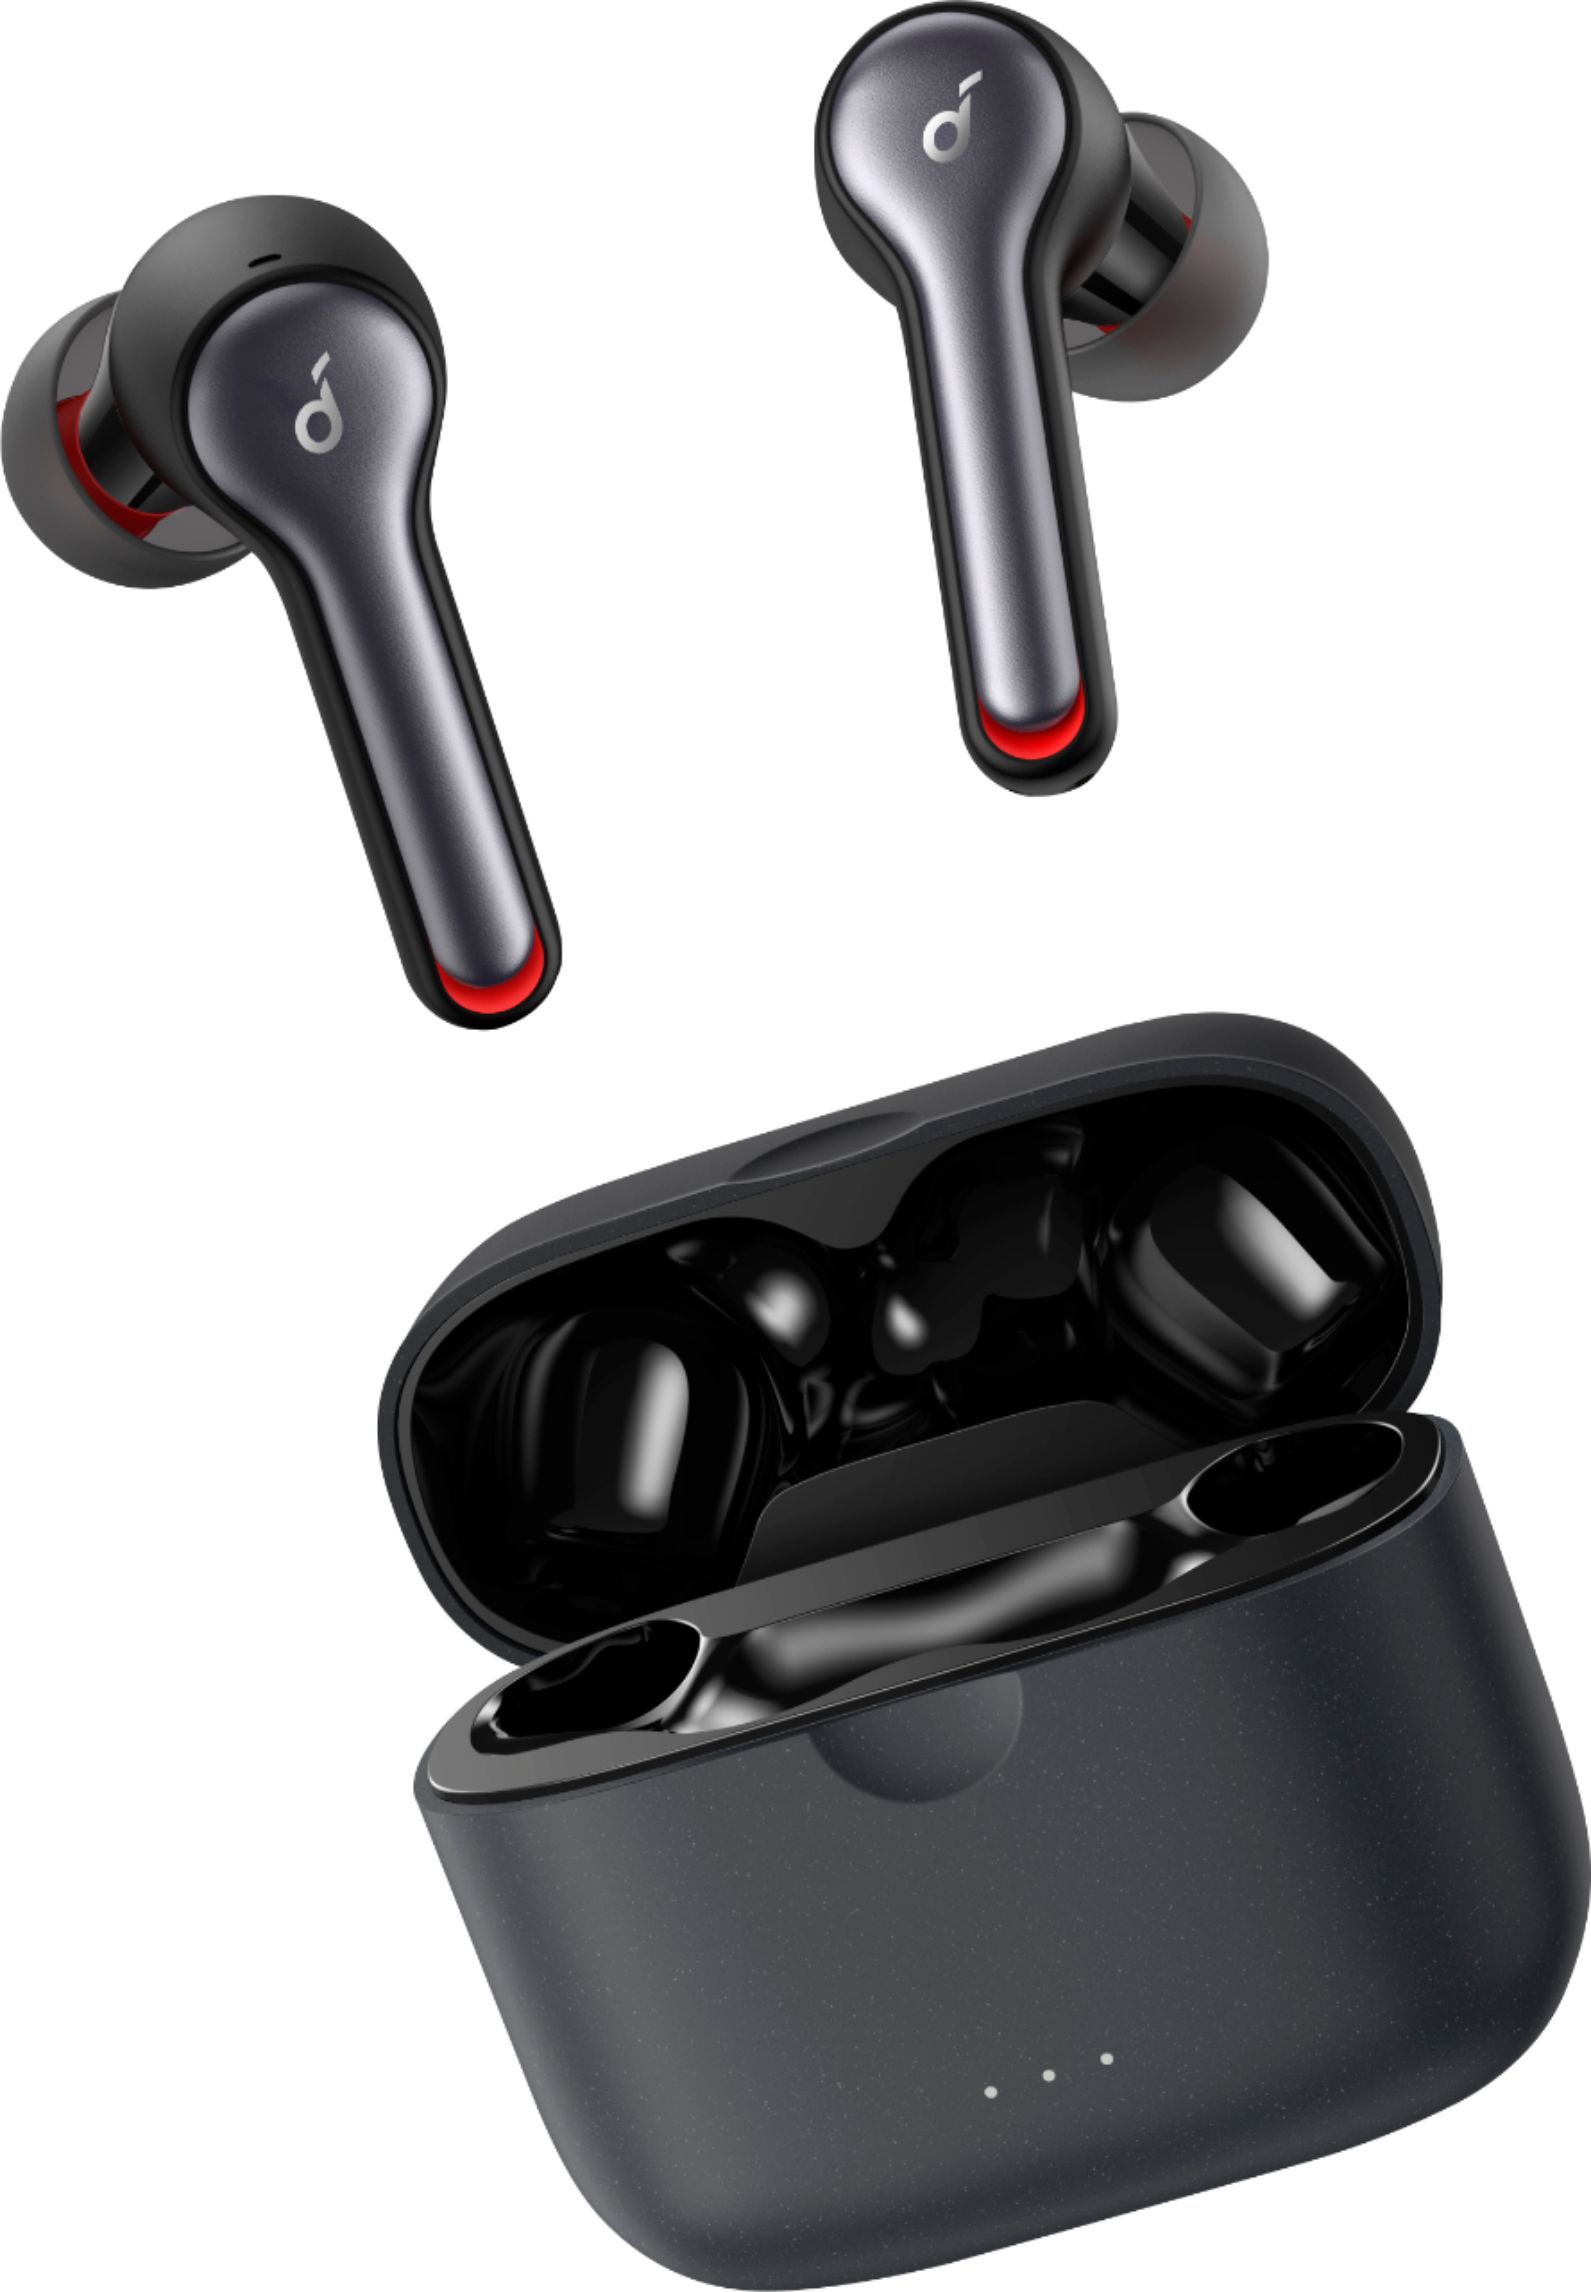 Anker Soundcore Liberty Air 2 True Wireless In-Ear Headphones Black  A3910Z11 - Best Buy